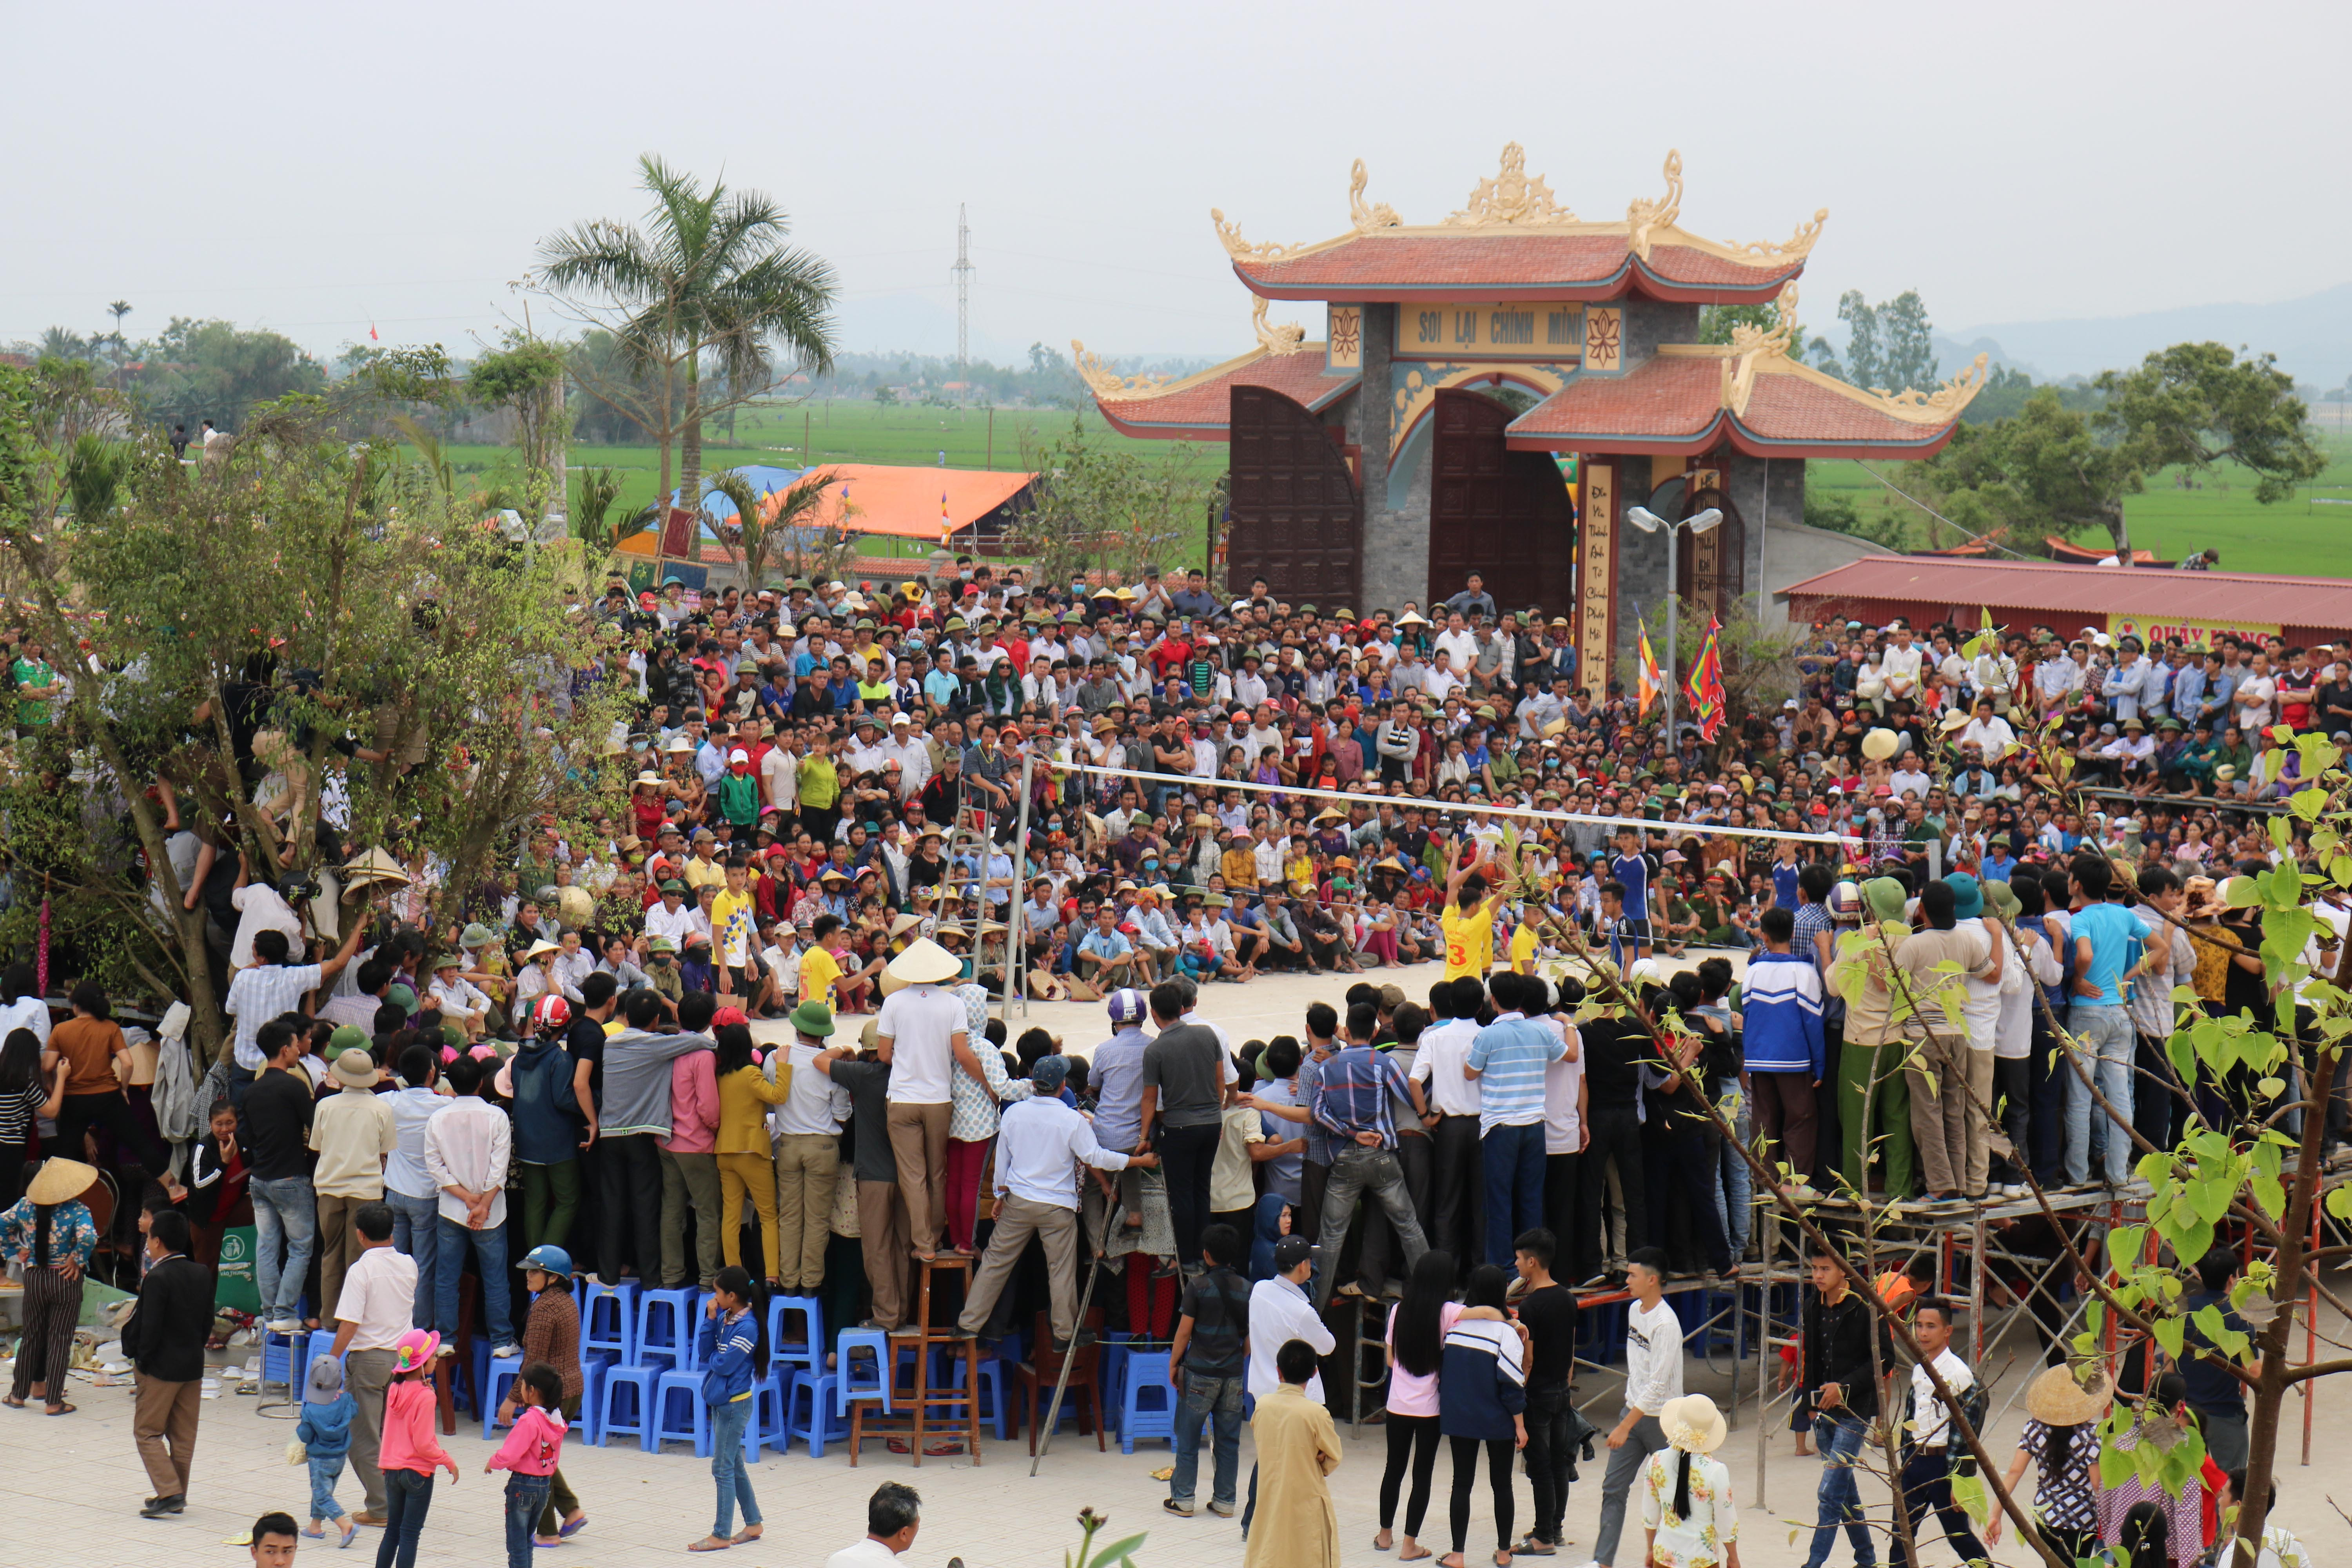 Hàng nghìn khán giả theo dõi trận chung kết bóng chuyền Nam giữa 2 đội: xã Tăng Thành và nhà đất Yên Thành vào chiều 31/3 trong tình trạng 